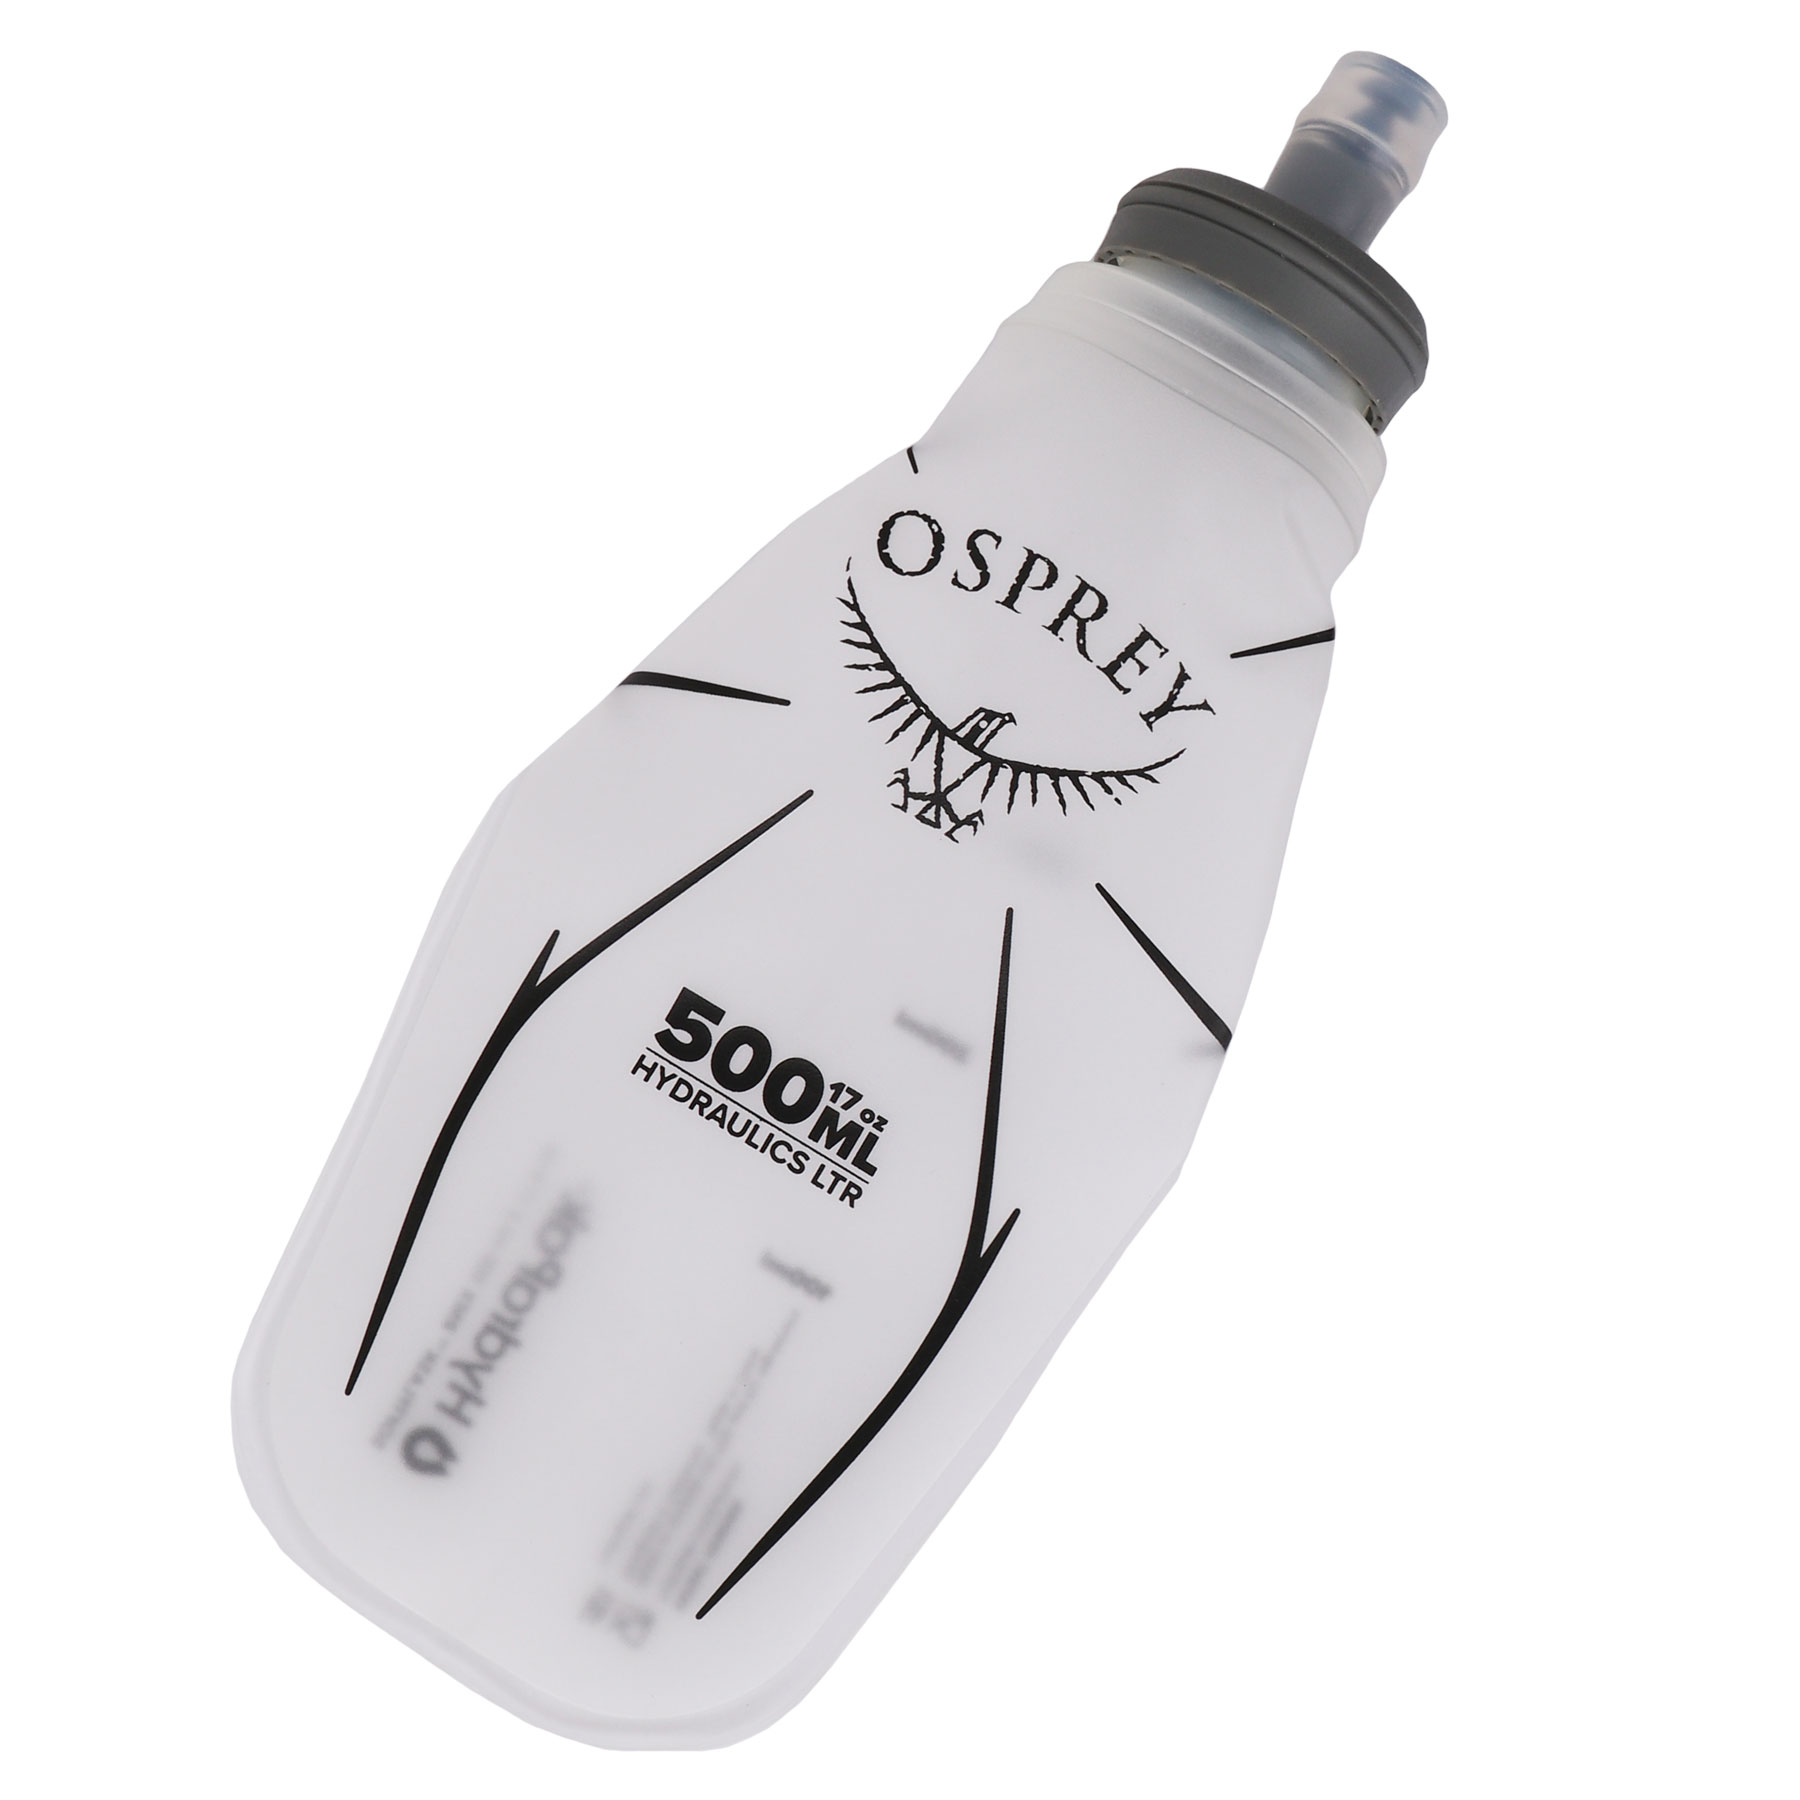 Foto de Osprey Hydraulics Soft Flask - Bidón - 500ml